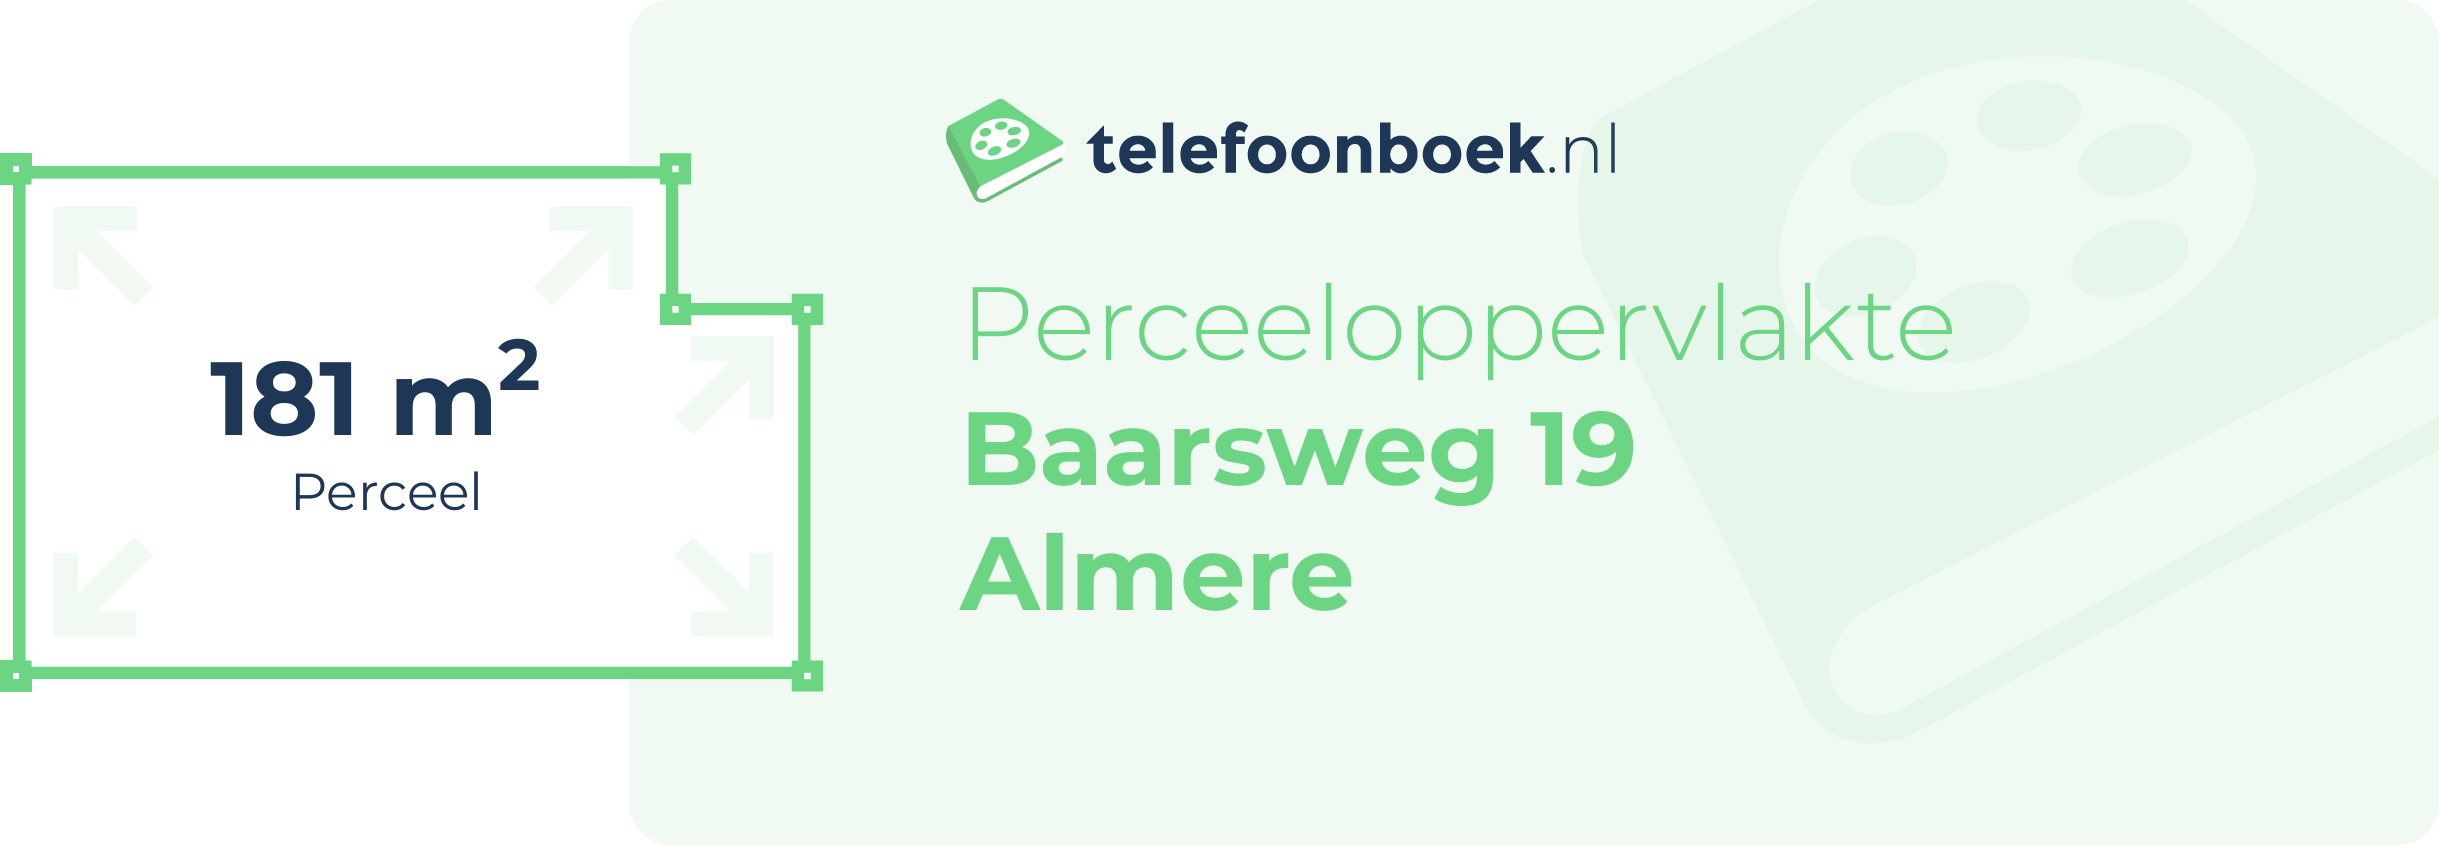 Perceeloppervlakte Baarsweg 19 Almere